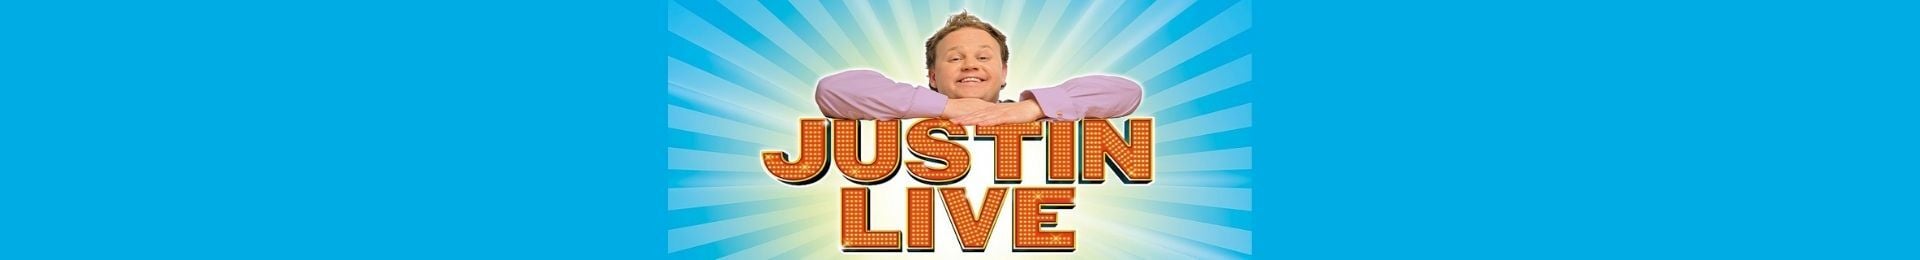 Justin Live banner image